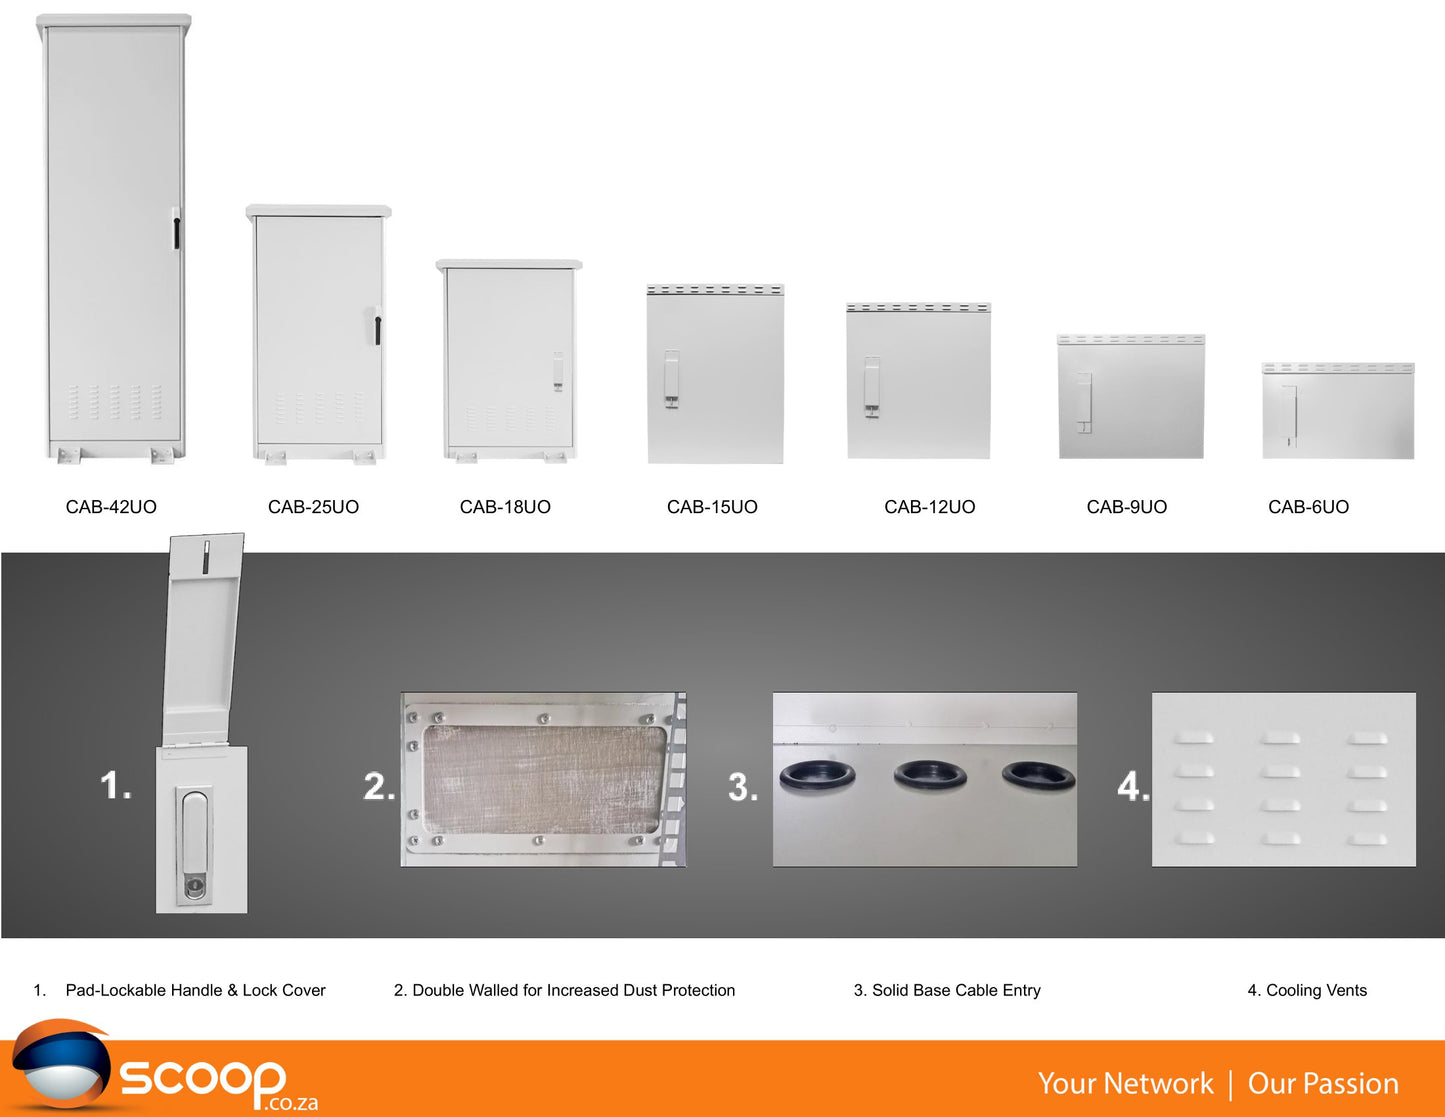 Scoop 9U 450mm Deep Outdoor Cabinet with 2 fans